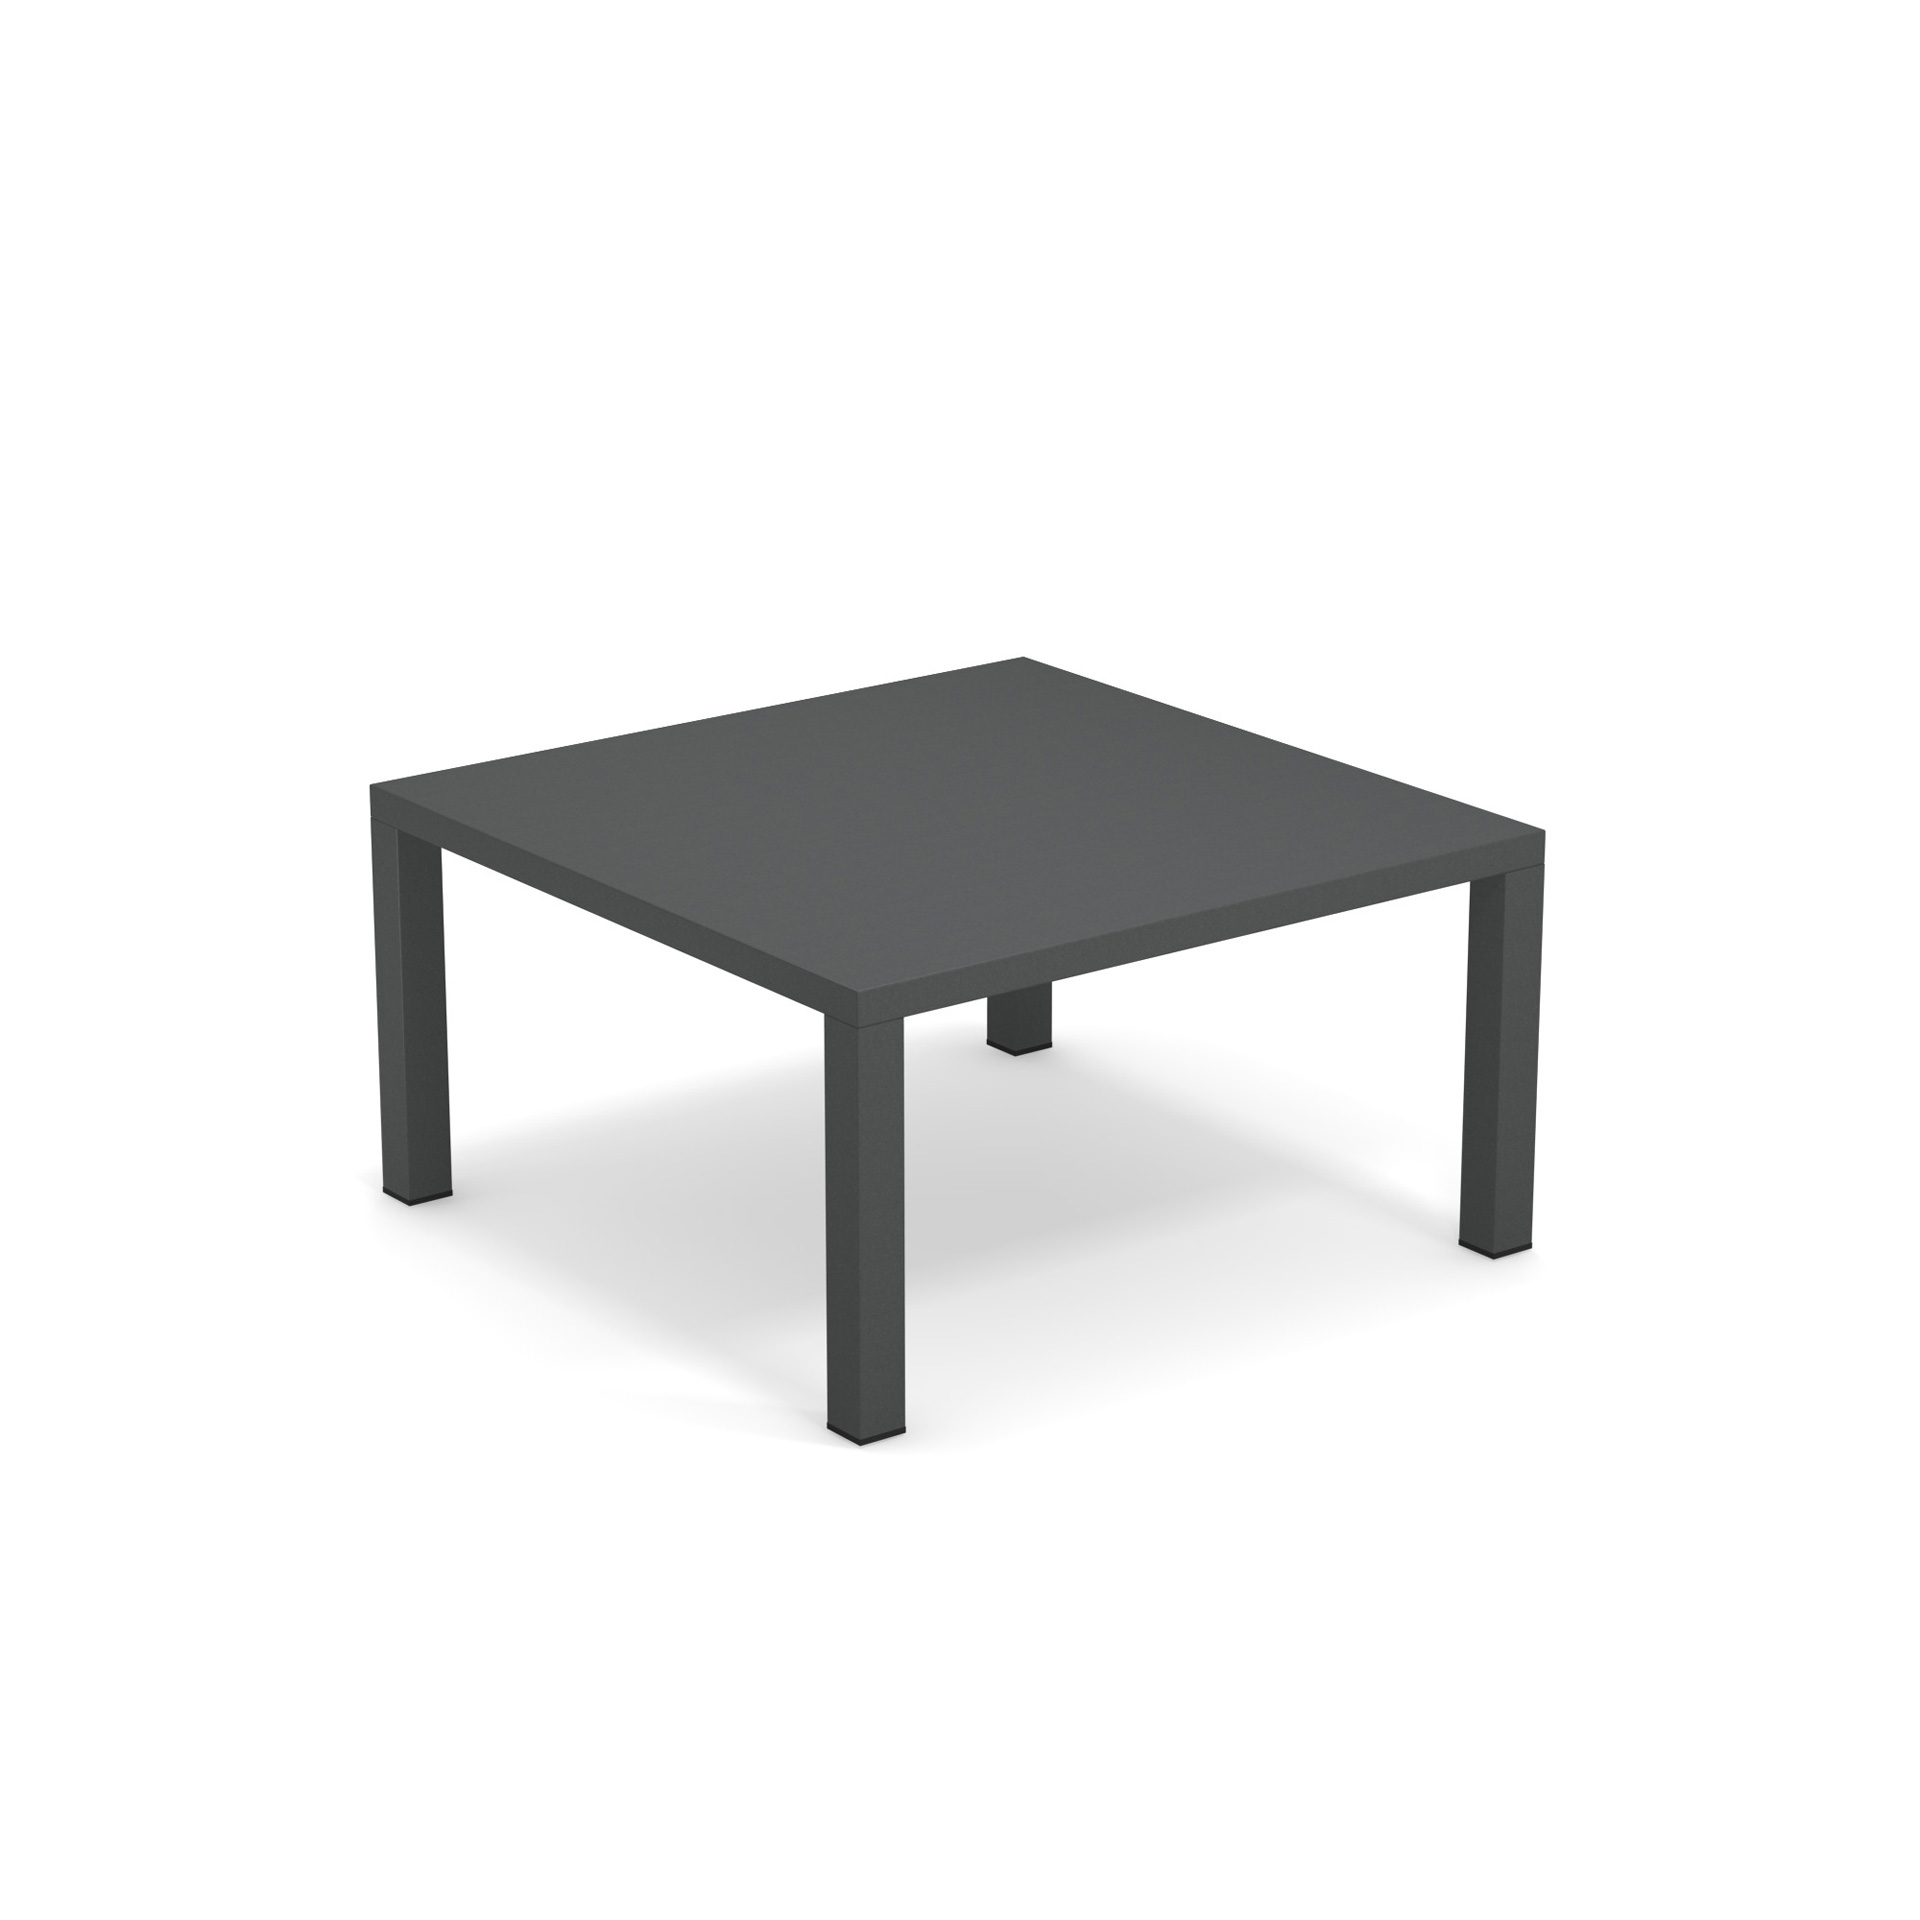 Round niedriger Tisch 80x80